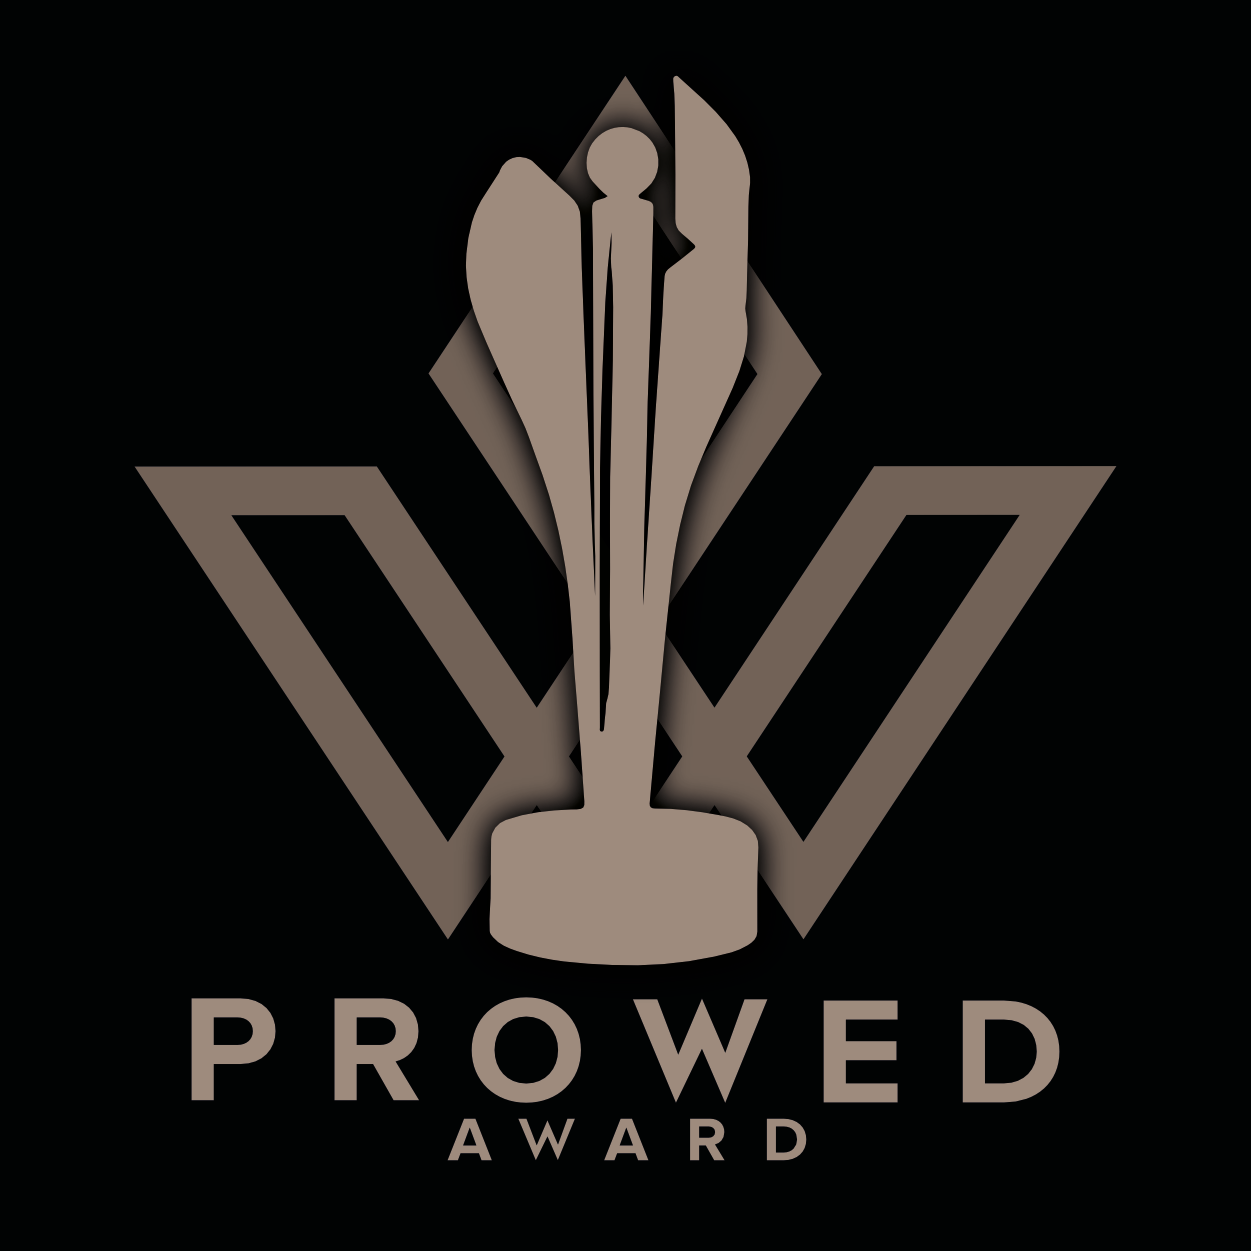 PROWEDaward_logo